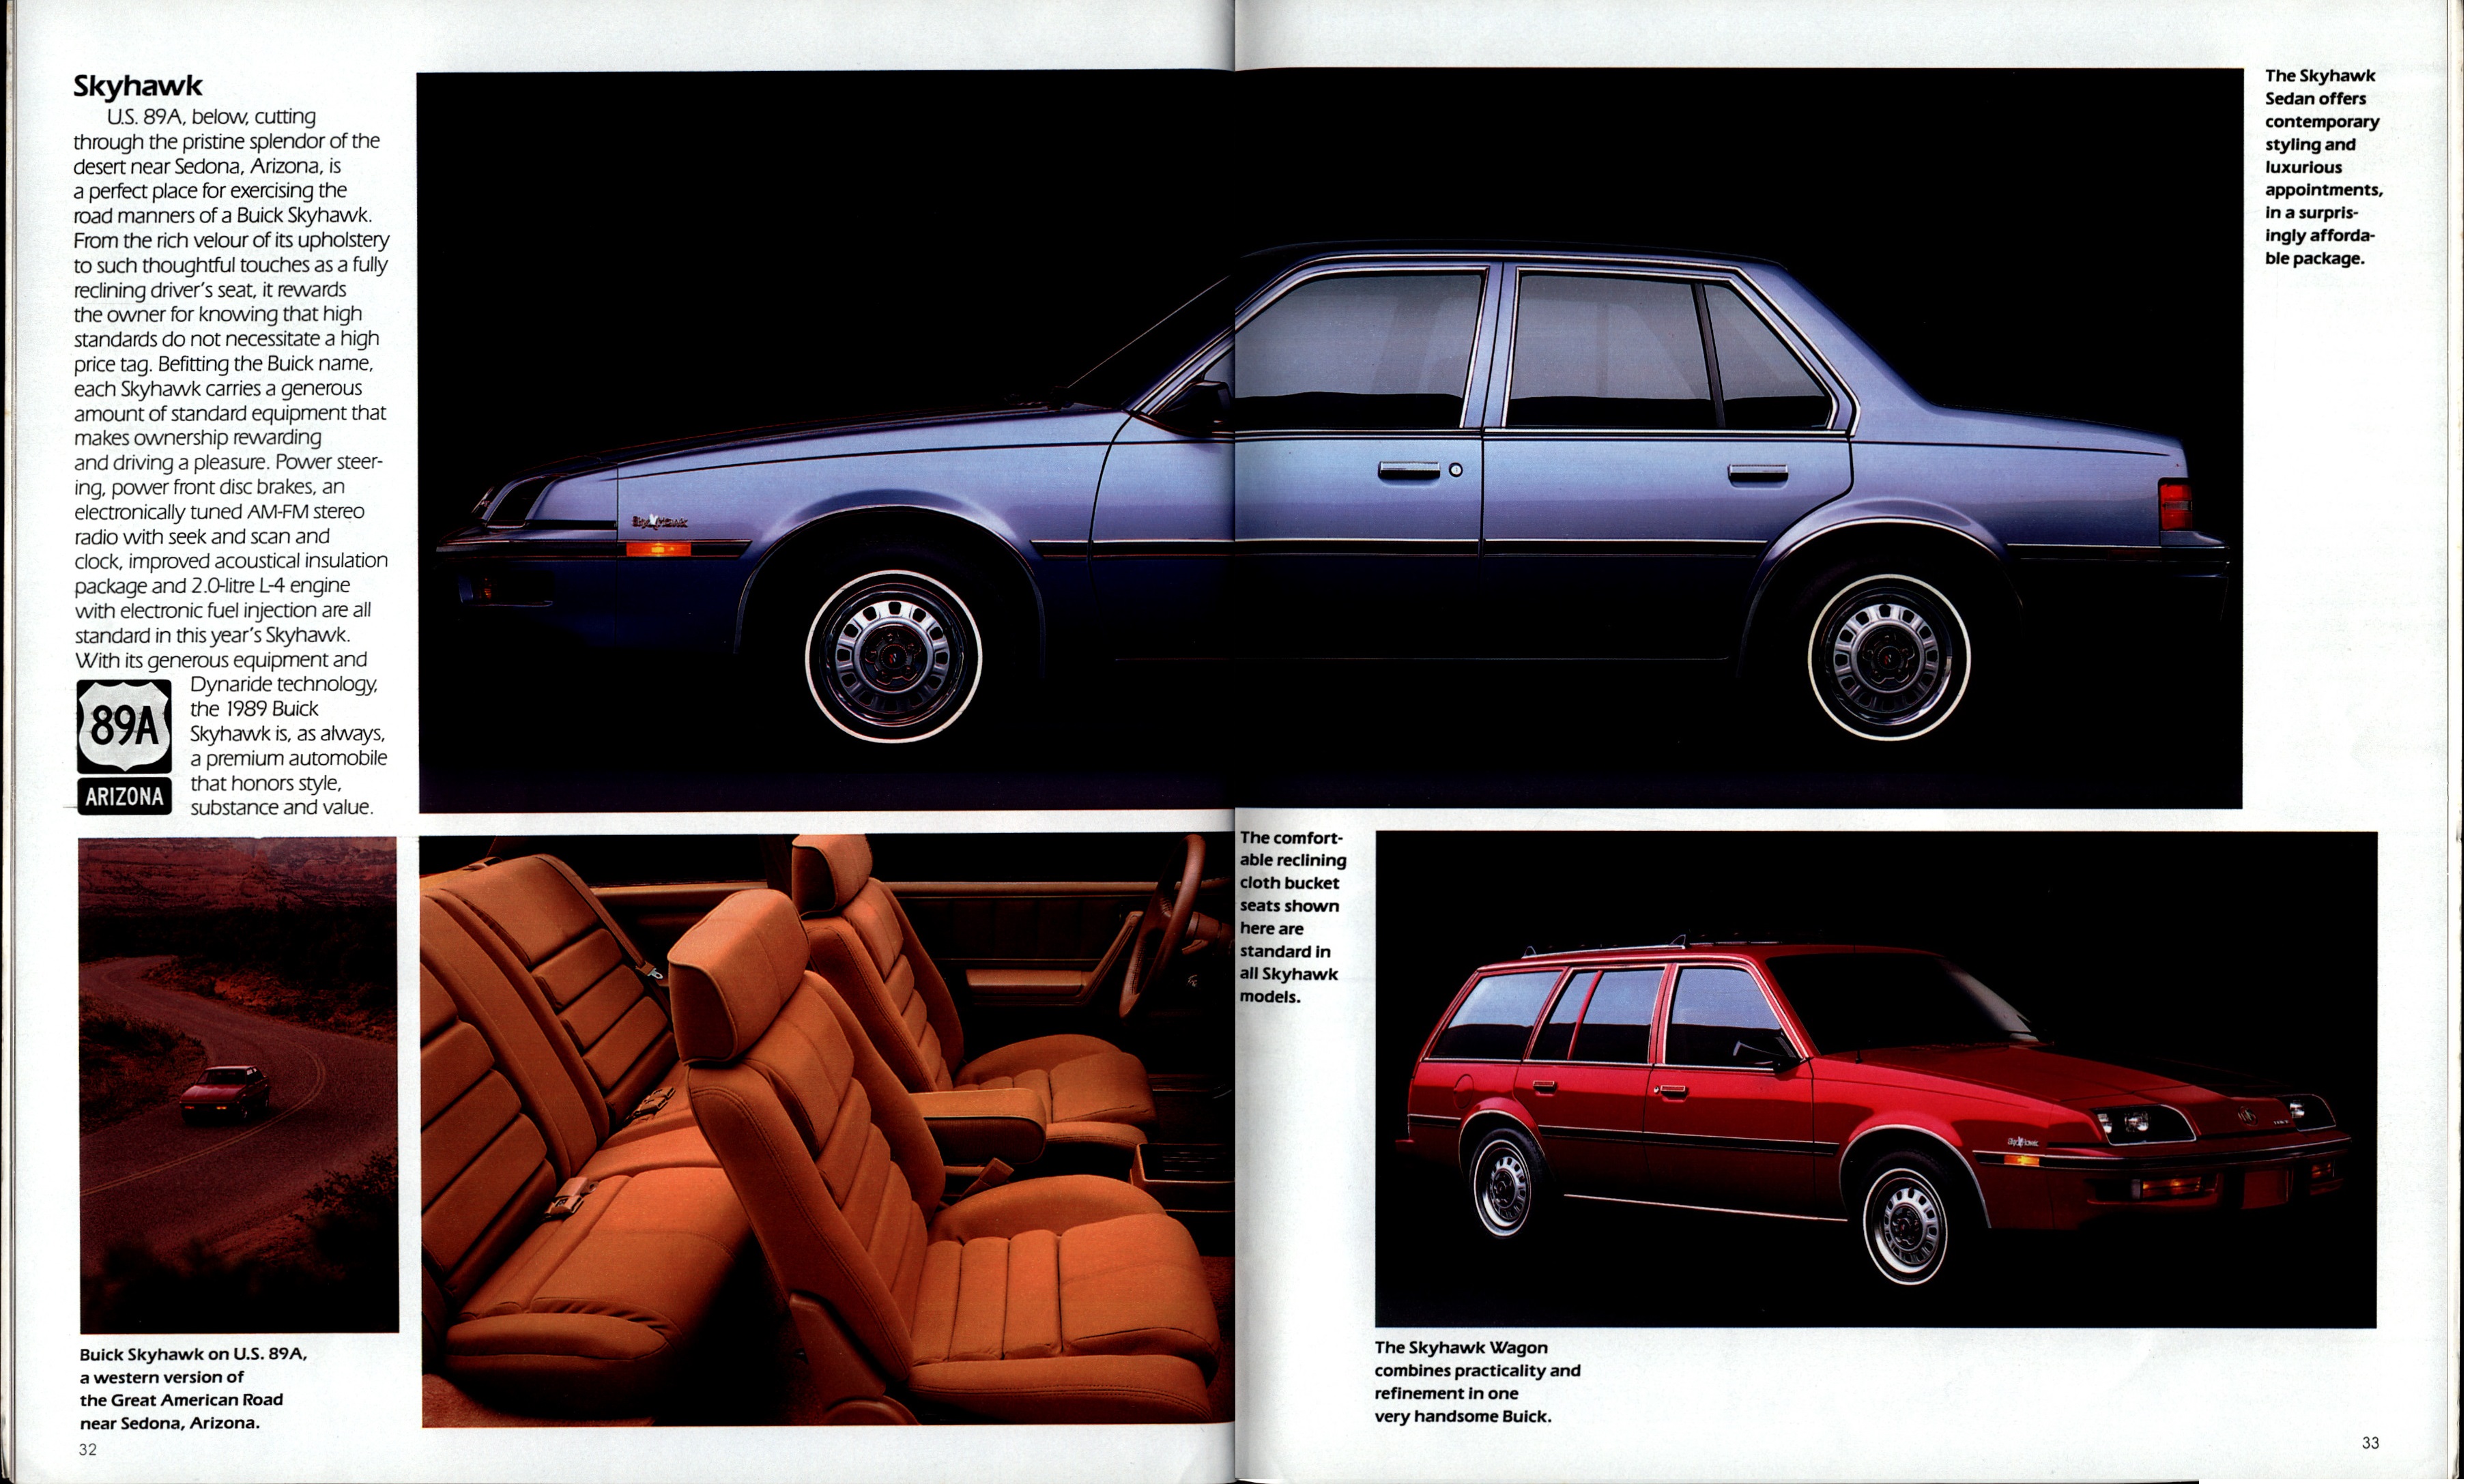 1989 Buick Full Line-32-33